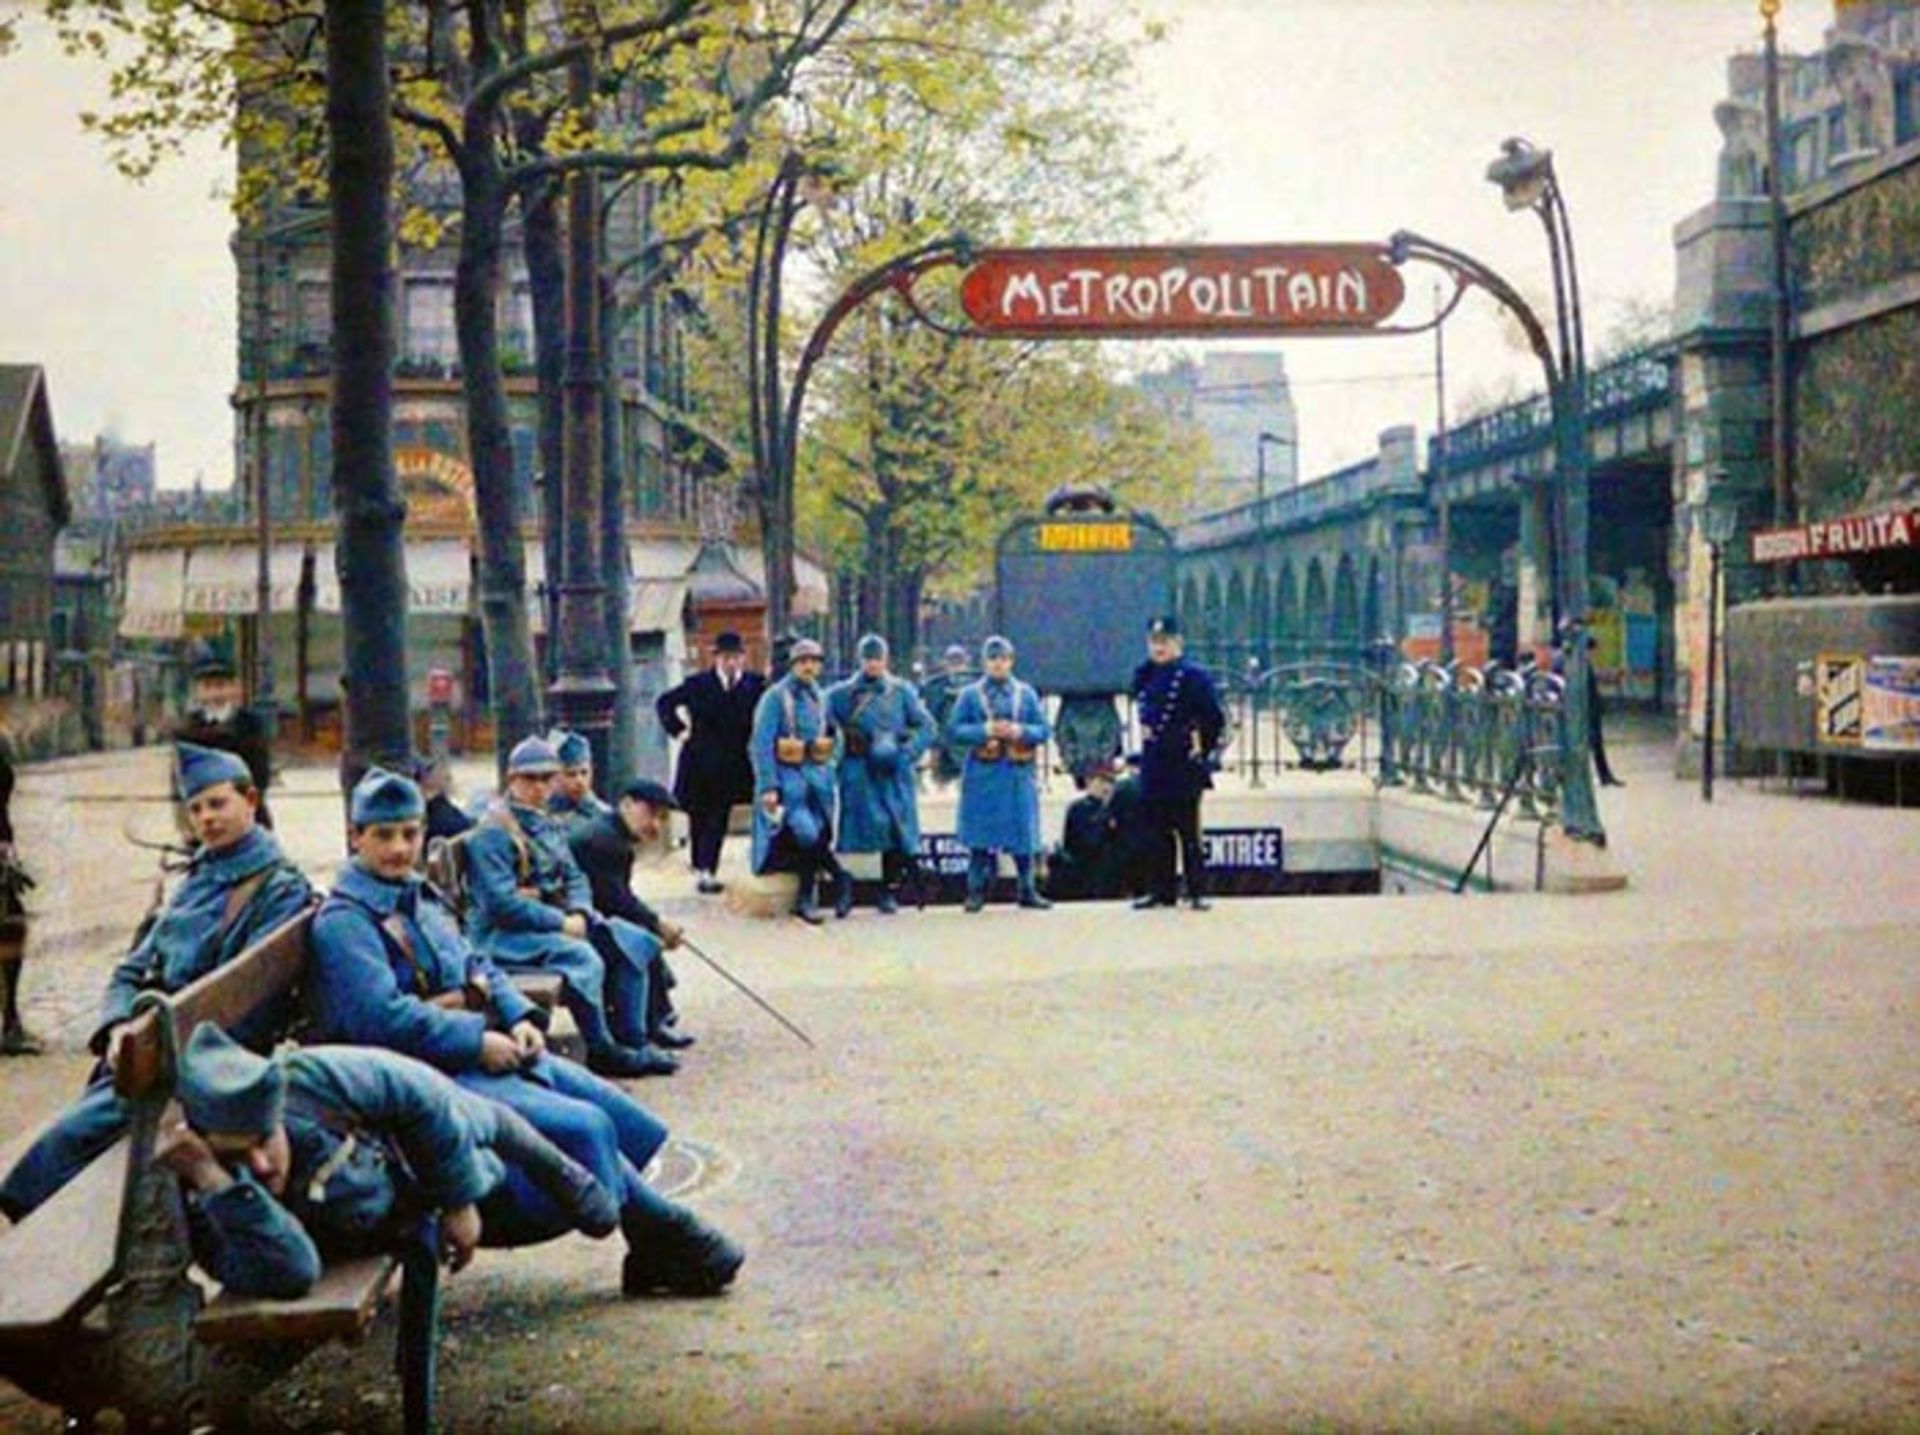 چشم انداز متفاوت پاریس در قالب تصاویری نادر و قدیمی